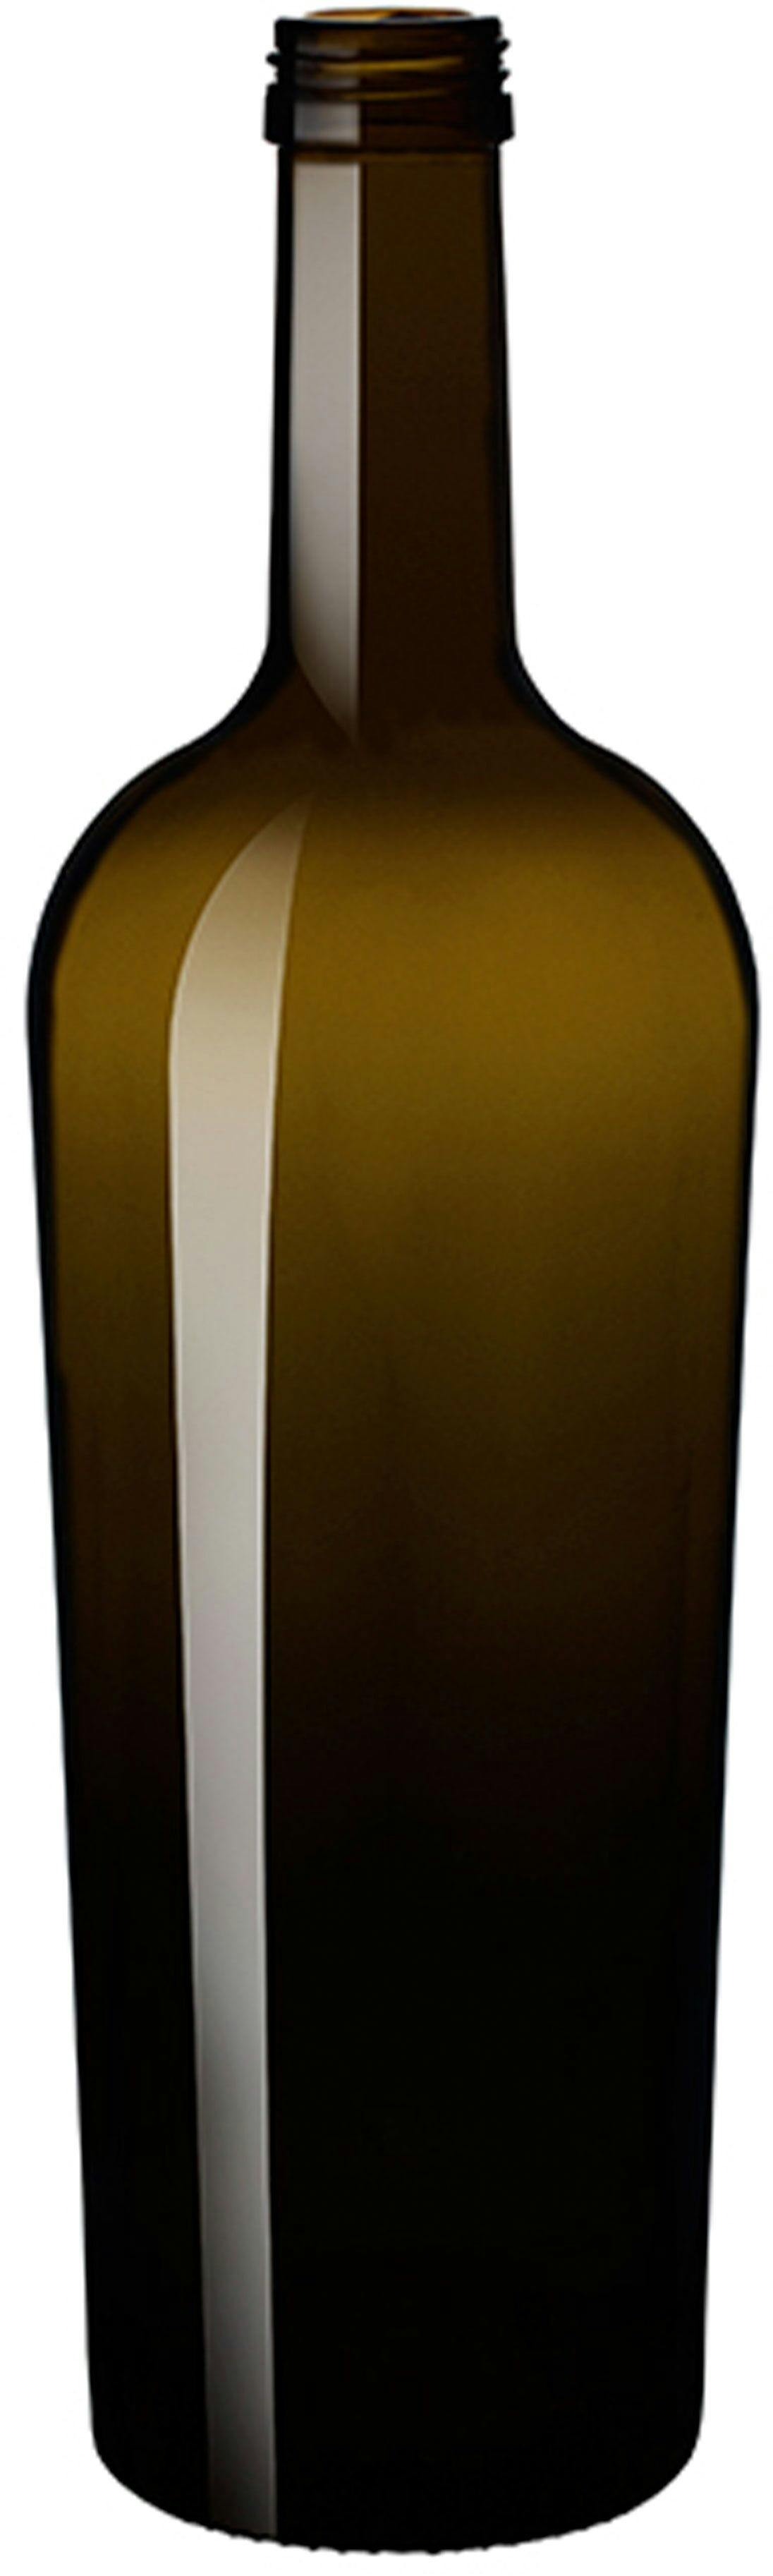 Bottle REGINOLIO 1000 ALTA P 31,5 VA